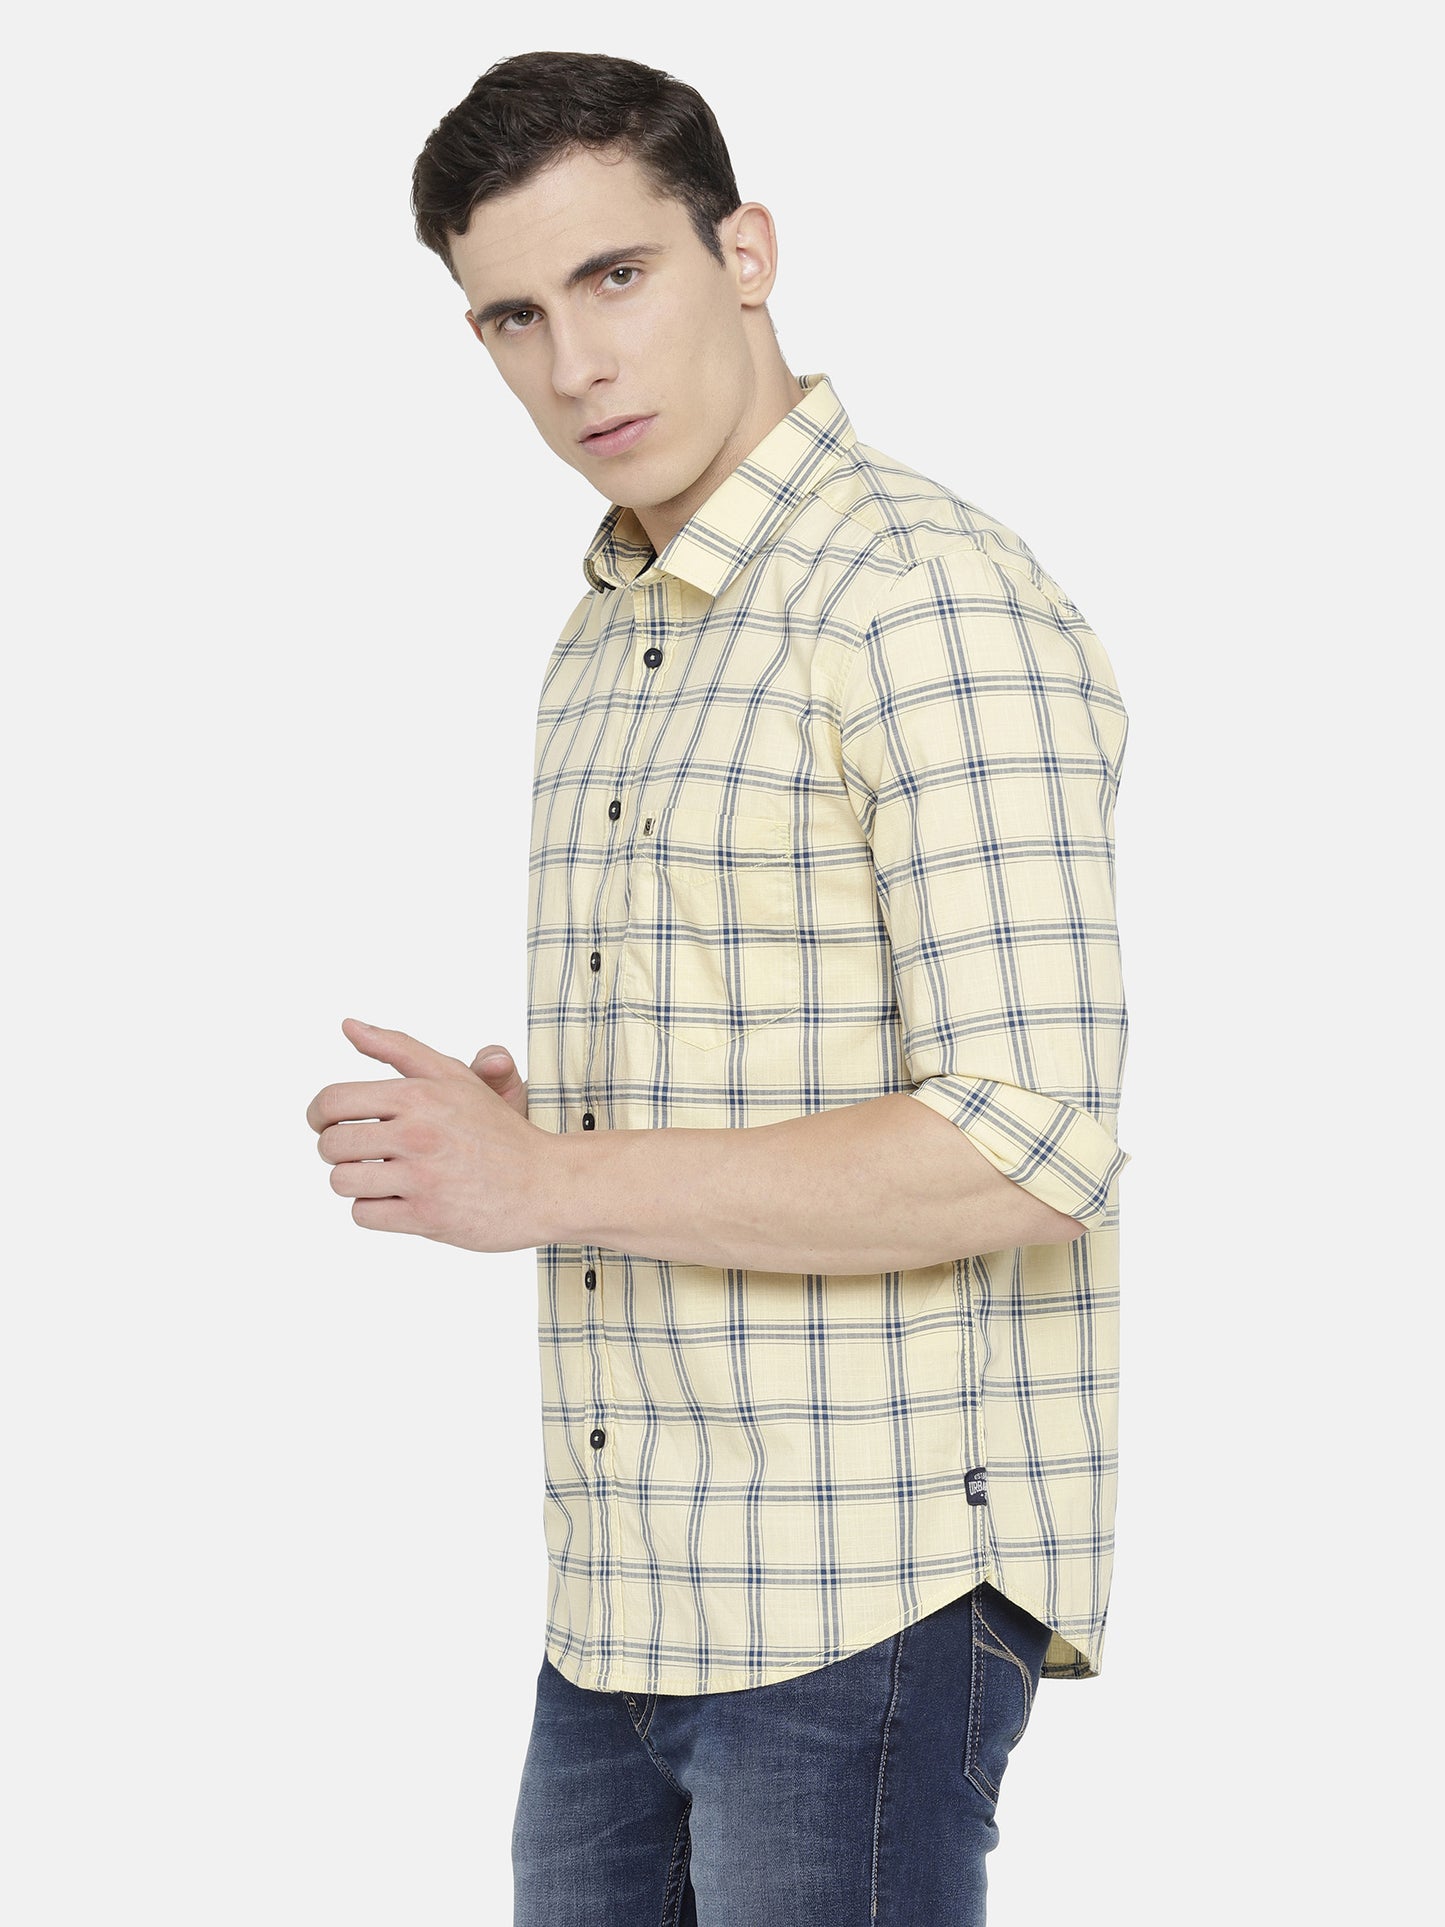 Light Yellow Checkered Shirt